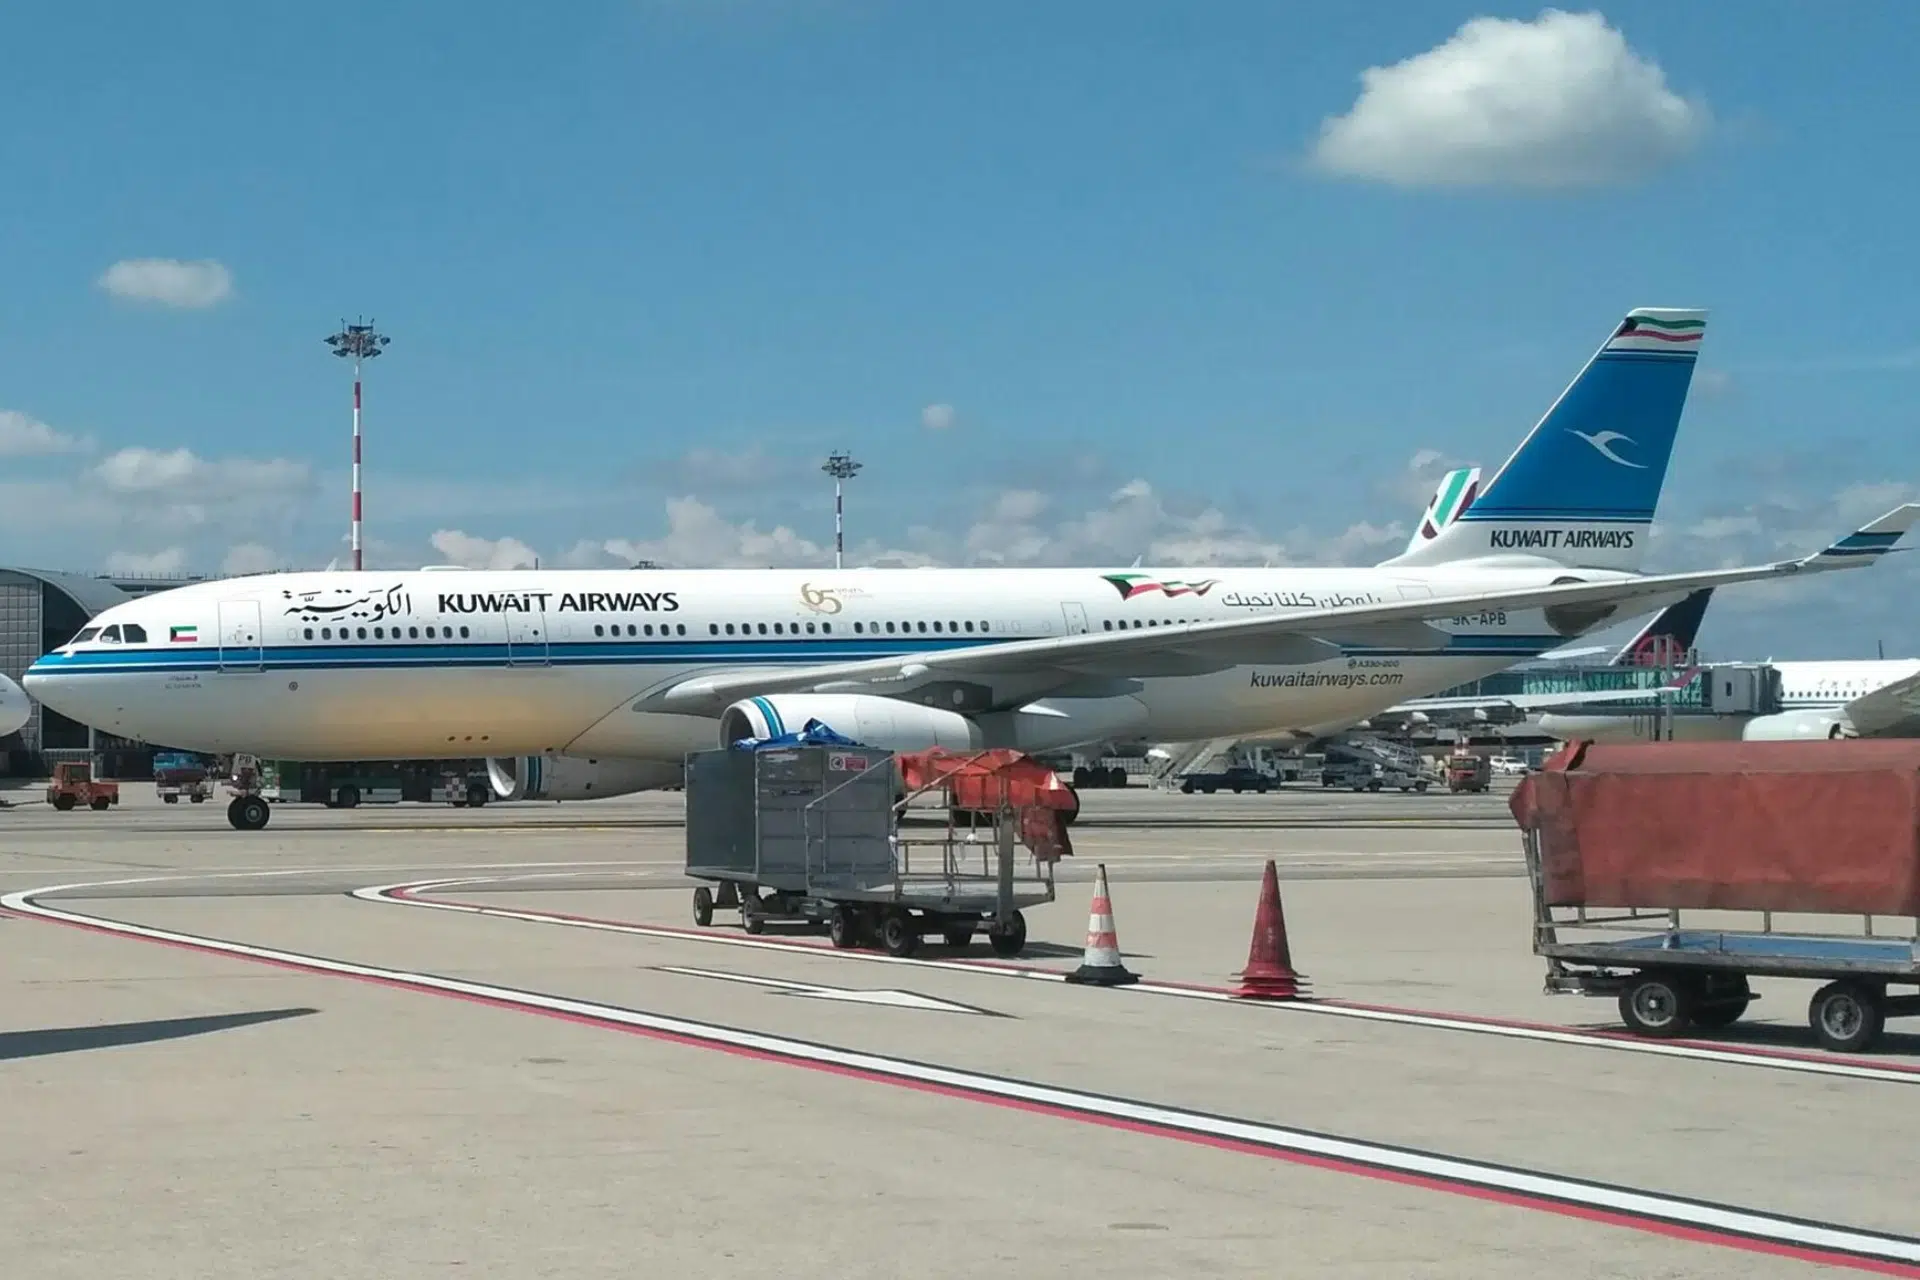 La Fiscalía de Madrid abre una investigación por las supuestas entrevistas de Meccti a azafatas en ropa interior para la aerolínea Kuwait Airways